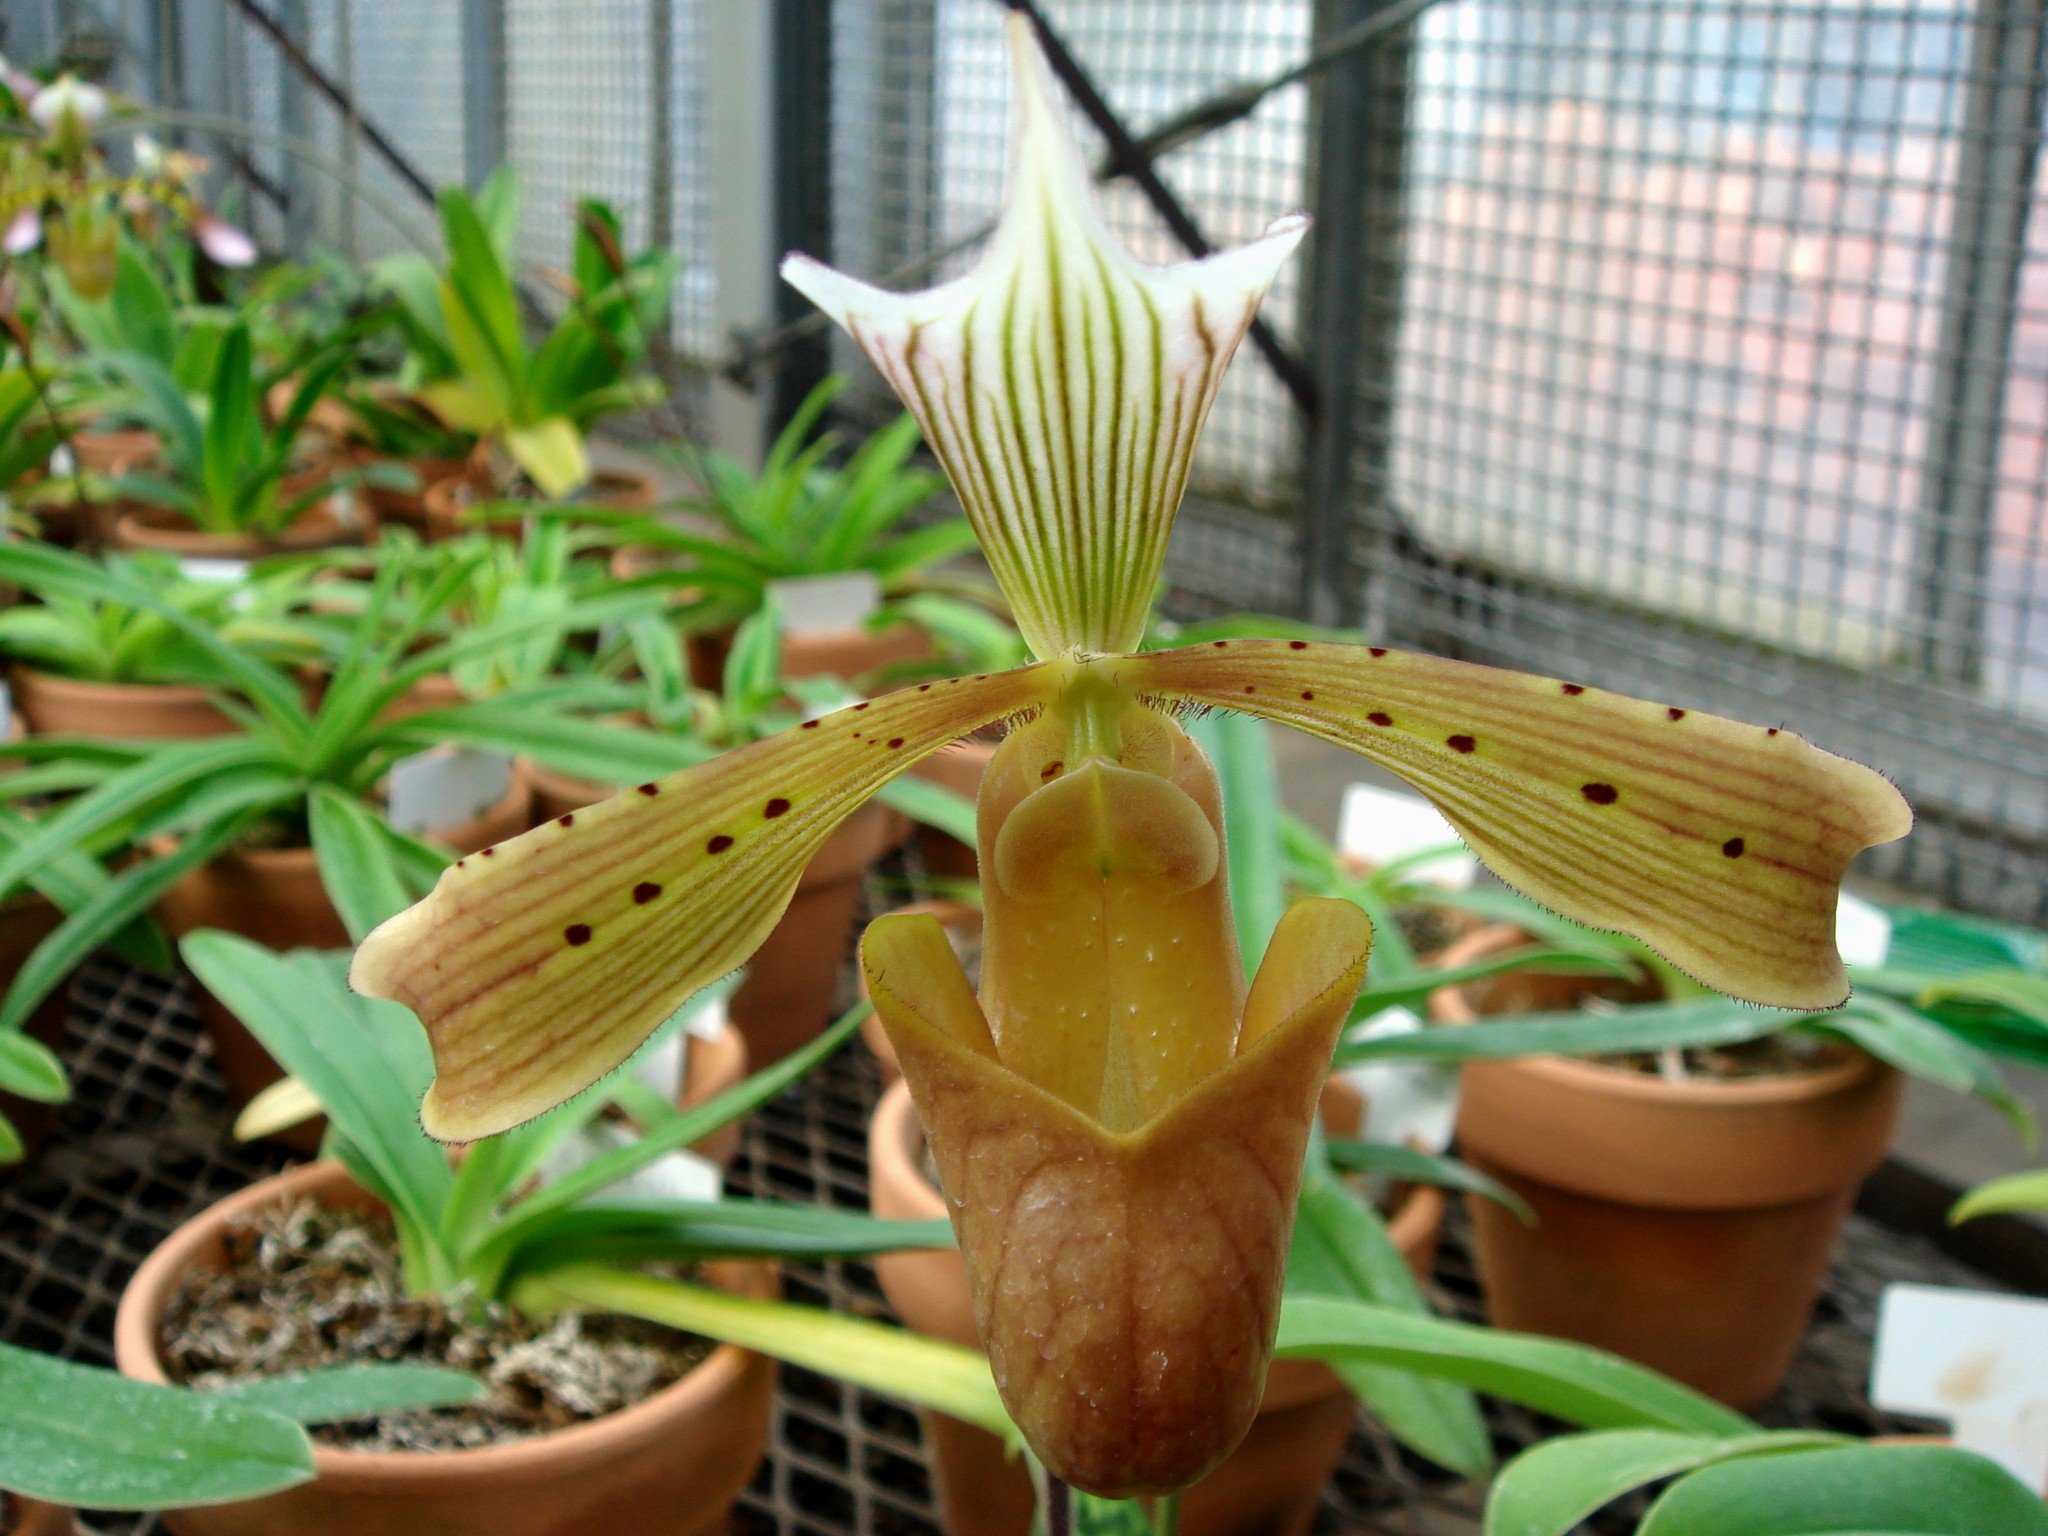 http://orchids.la.coocan.jp/Paphiopedilum/Paphiopedilum%20tonsum/DSC04078.JPG